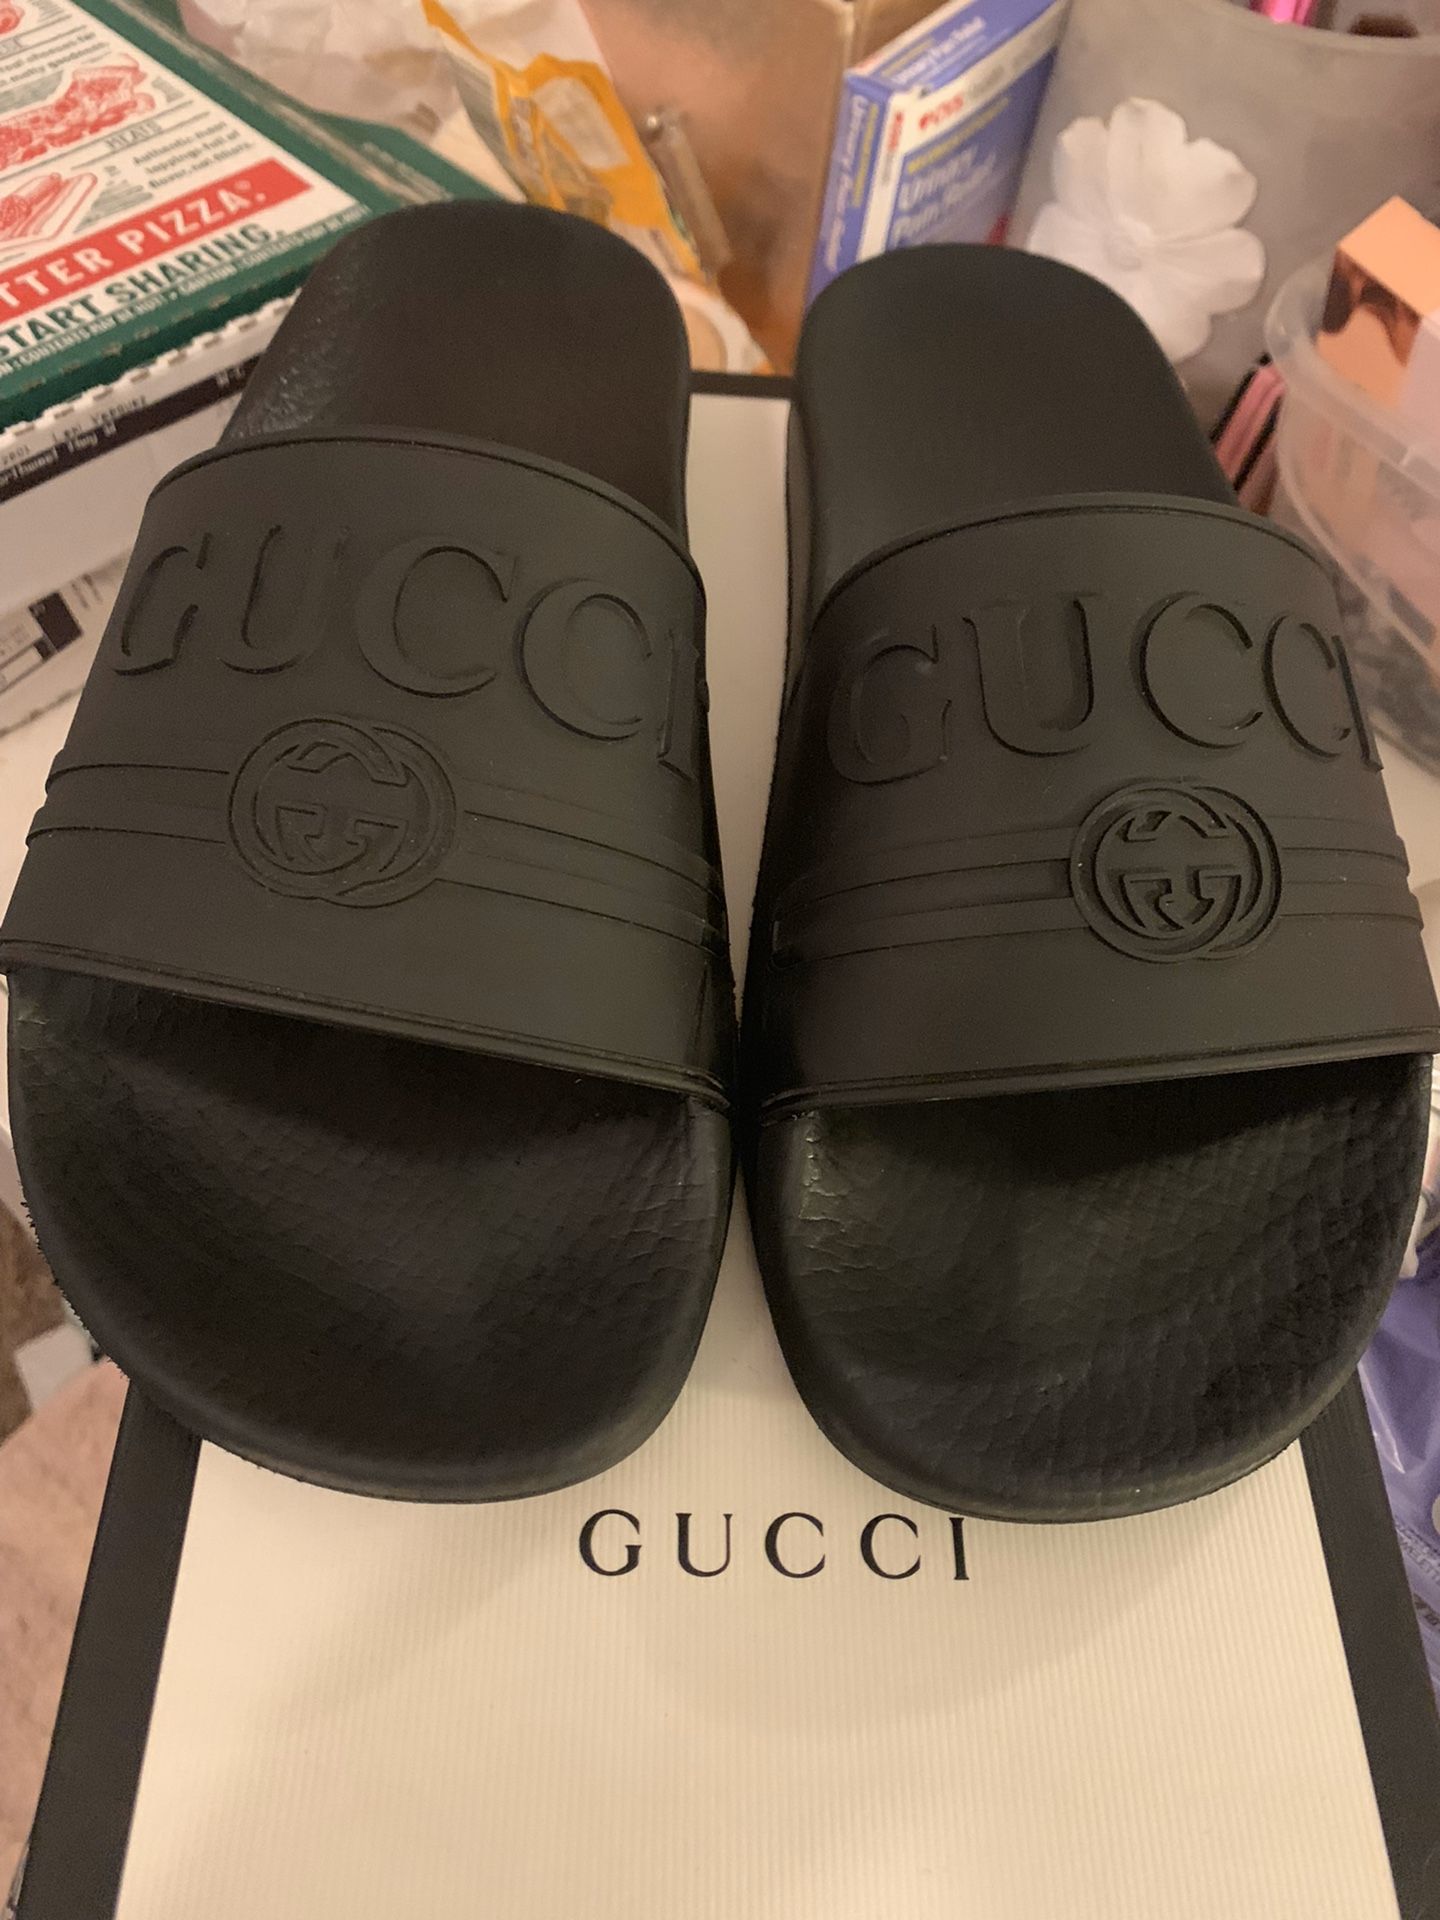 All black Gucci slides hmu!! Size 7